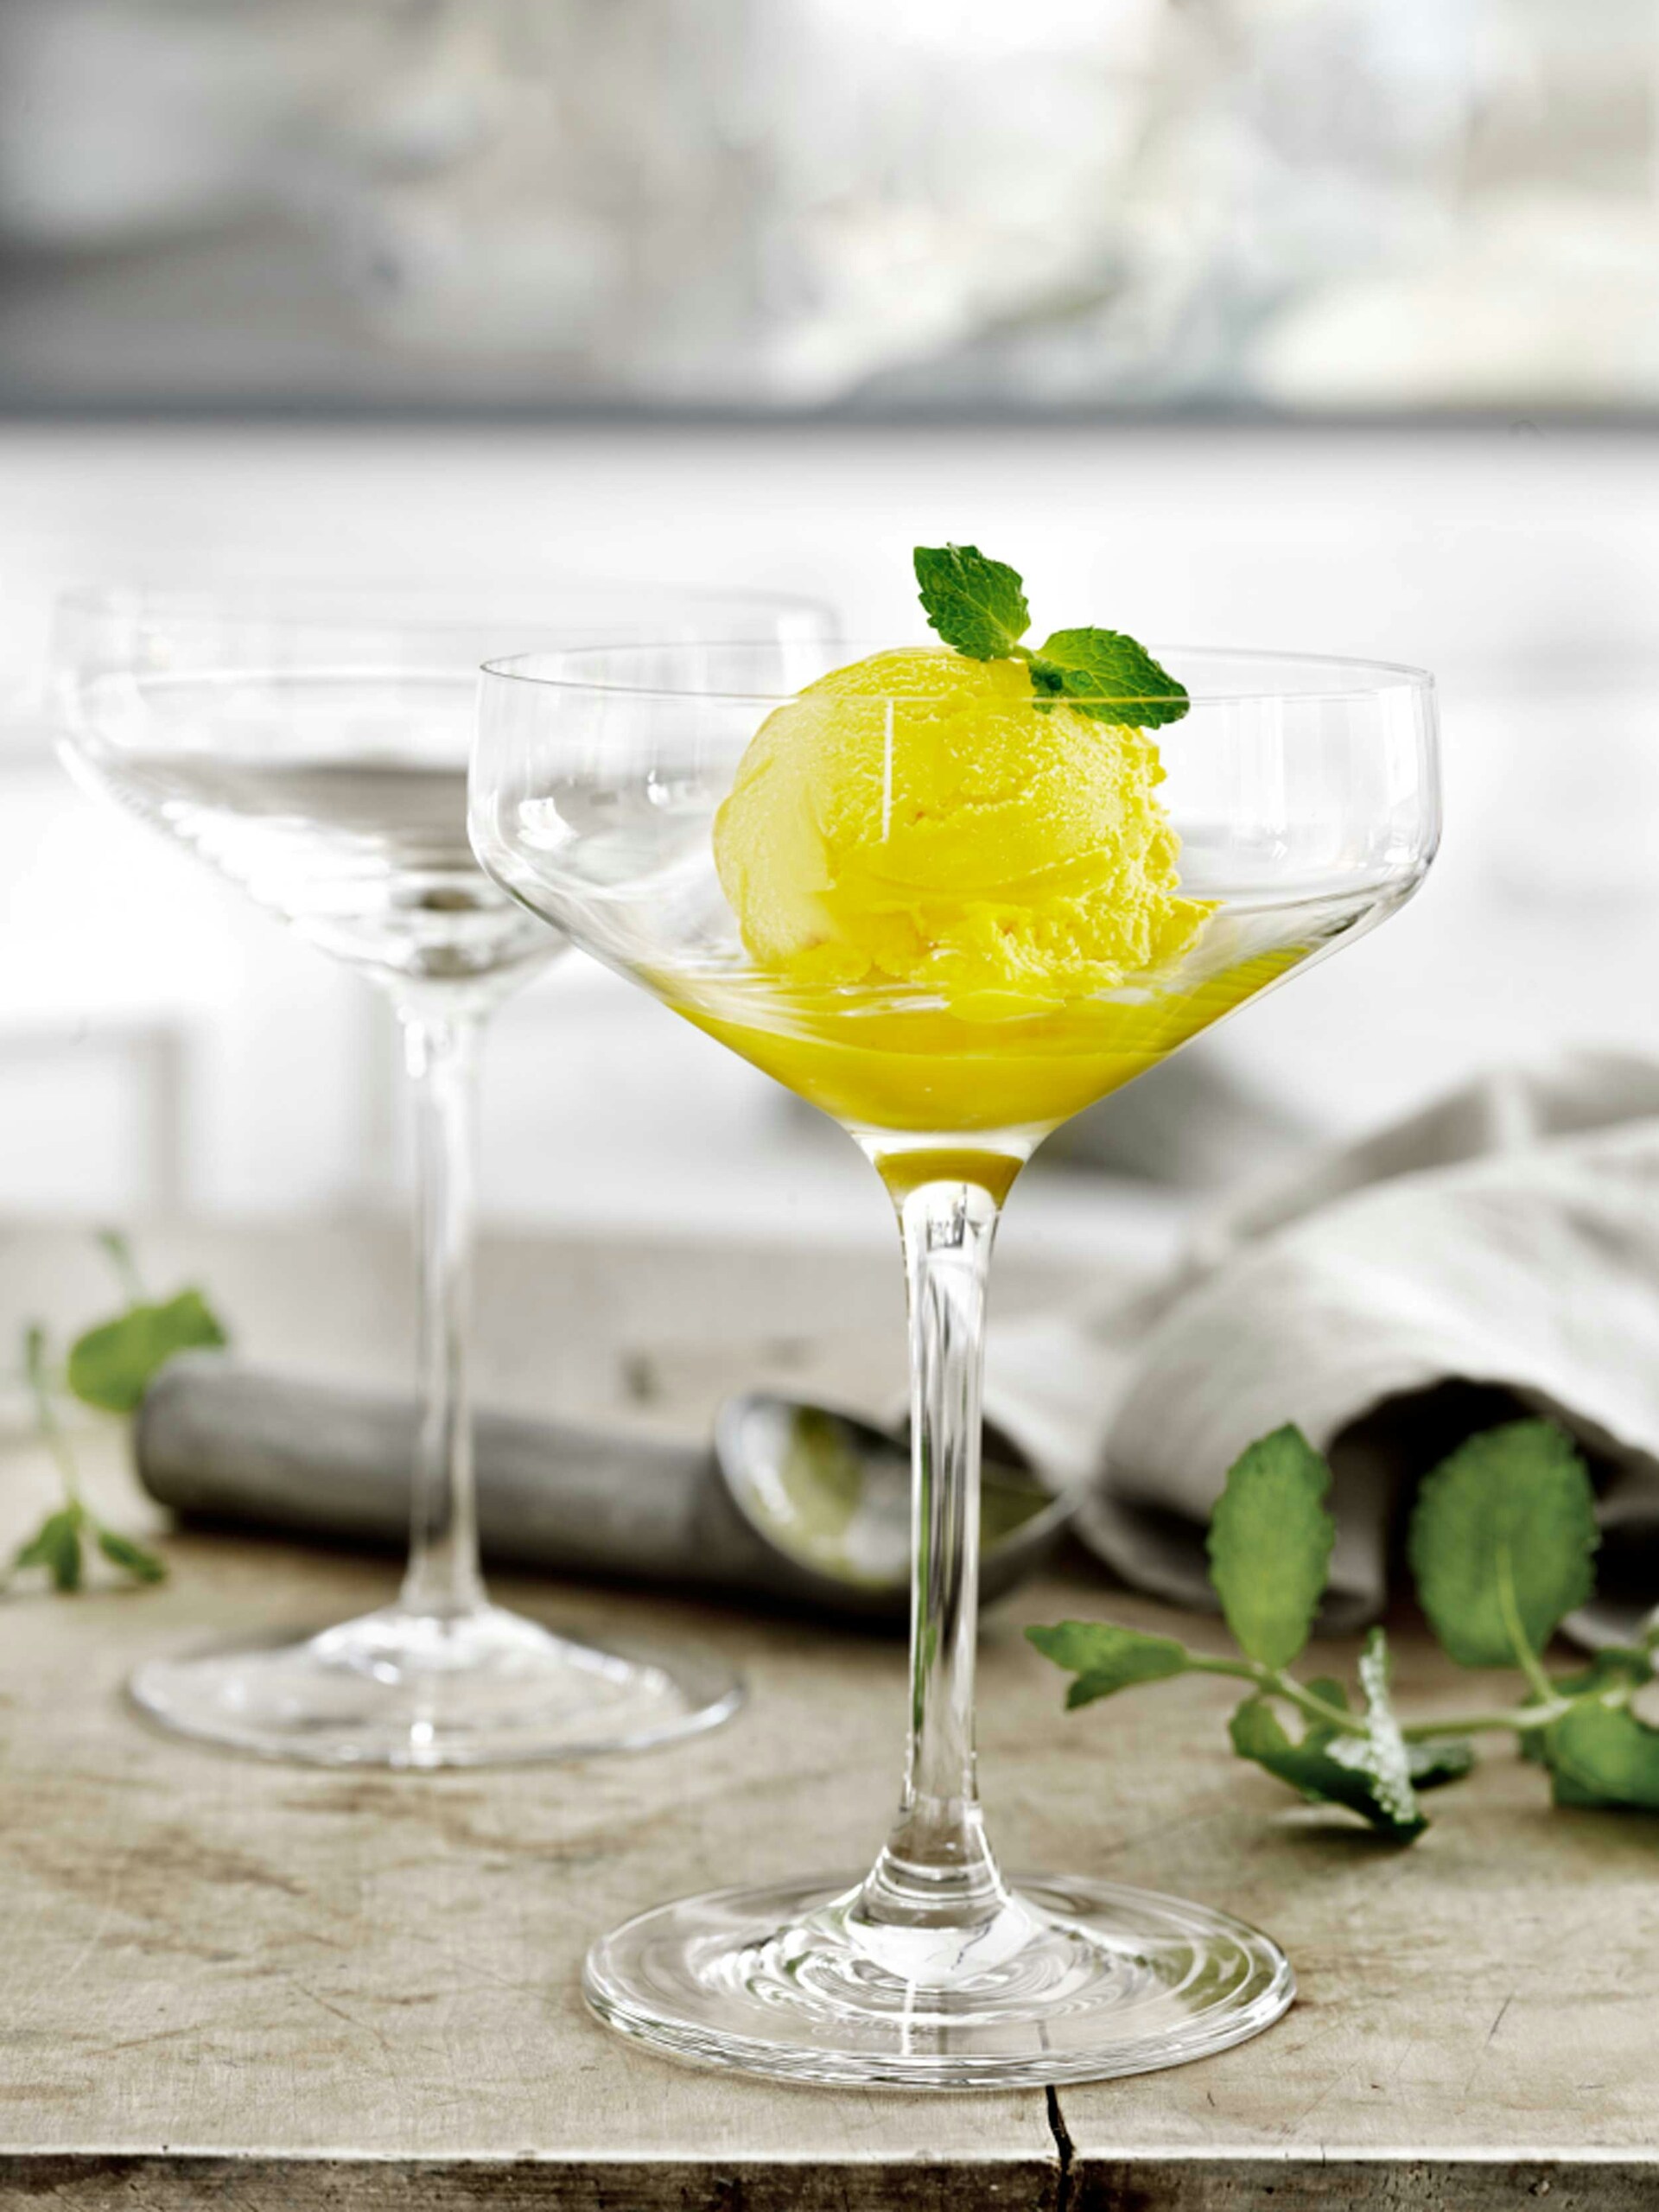 https://royaldesign.com/image/2/holmegaard-perfection-cocktail-glass-set-of-6-4